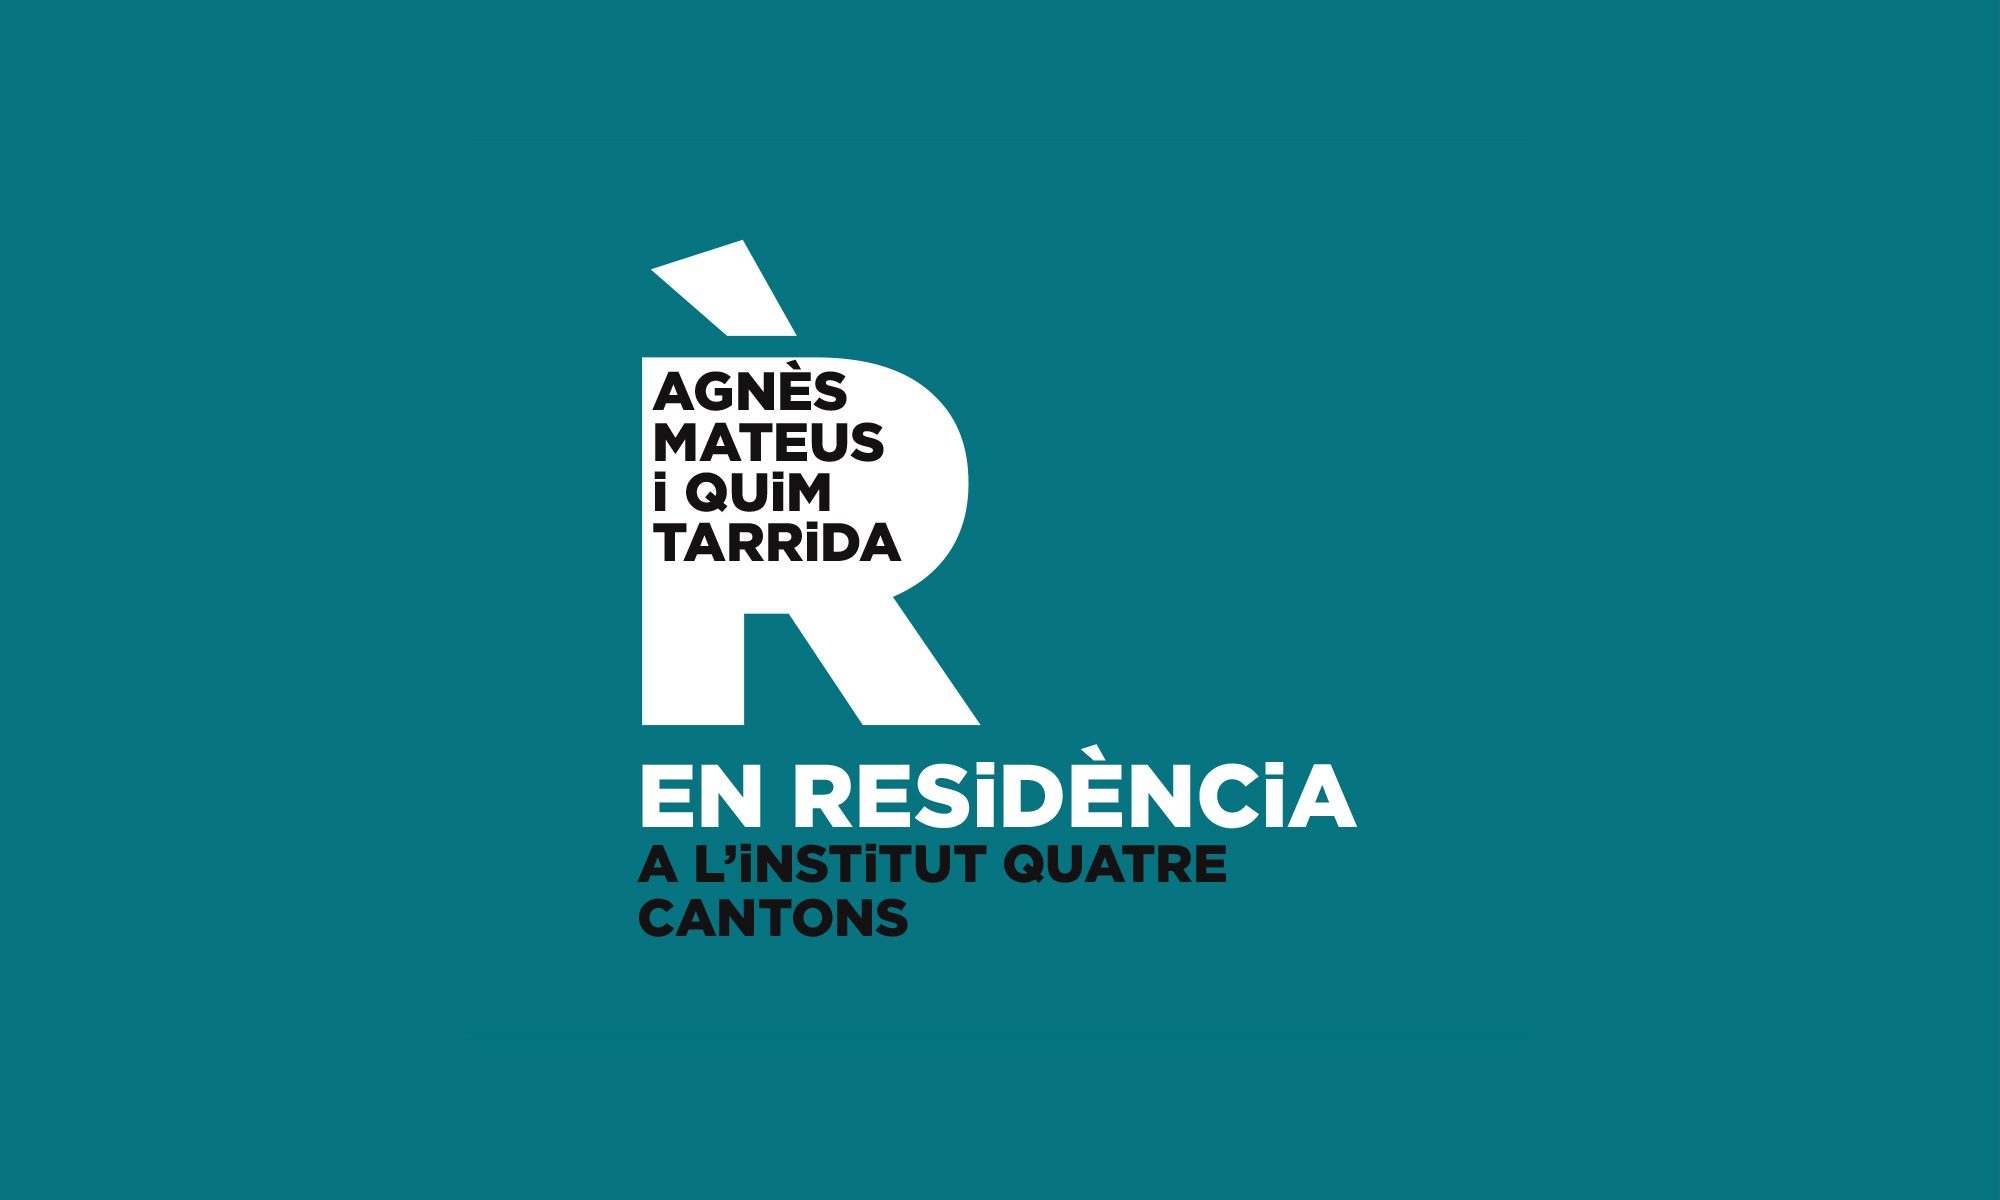 Agnès Mateus i Quim Tarrida EN RESiDÈNCiA